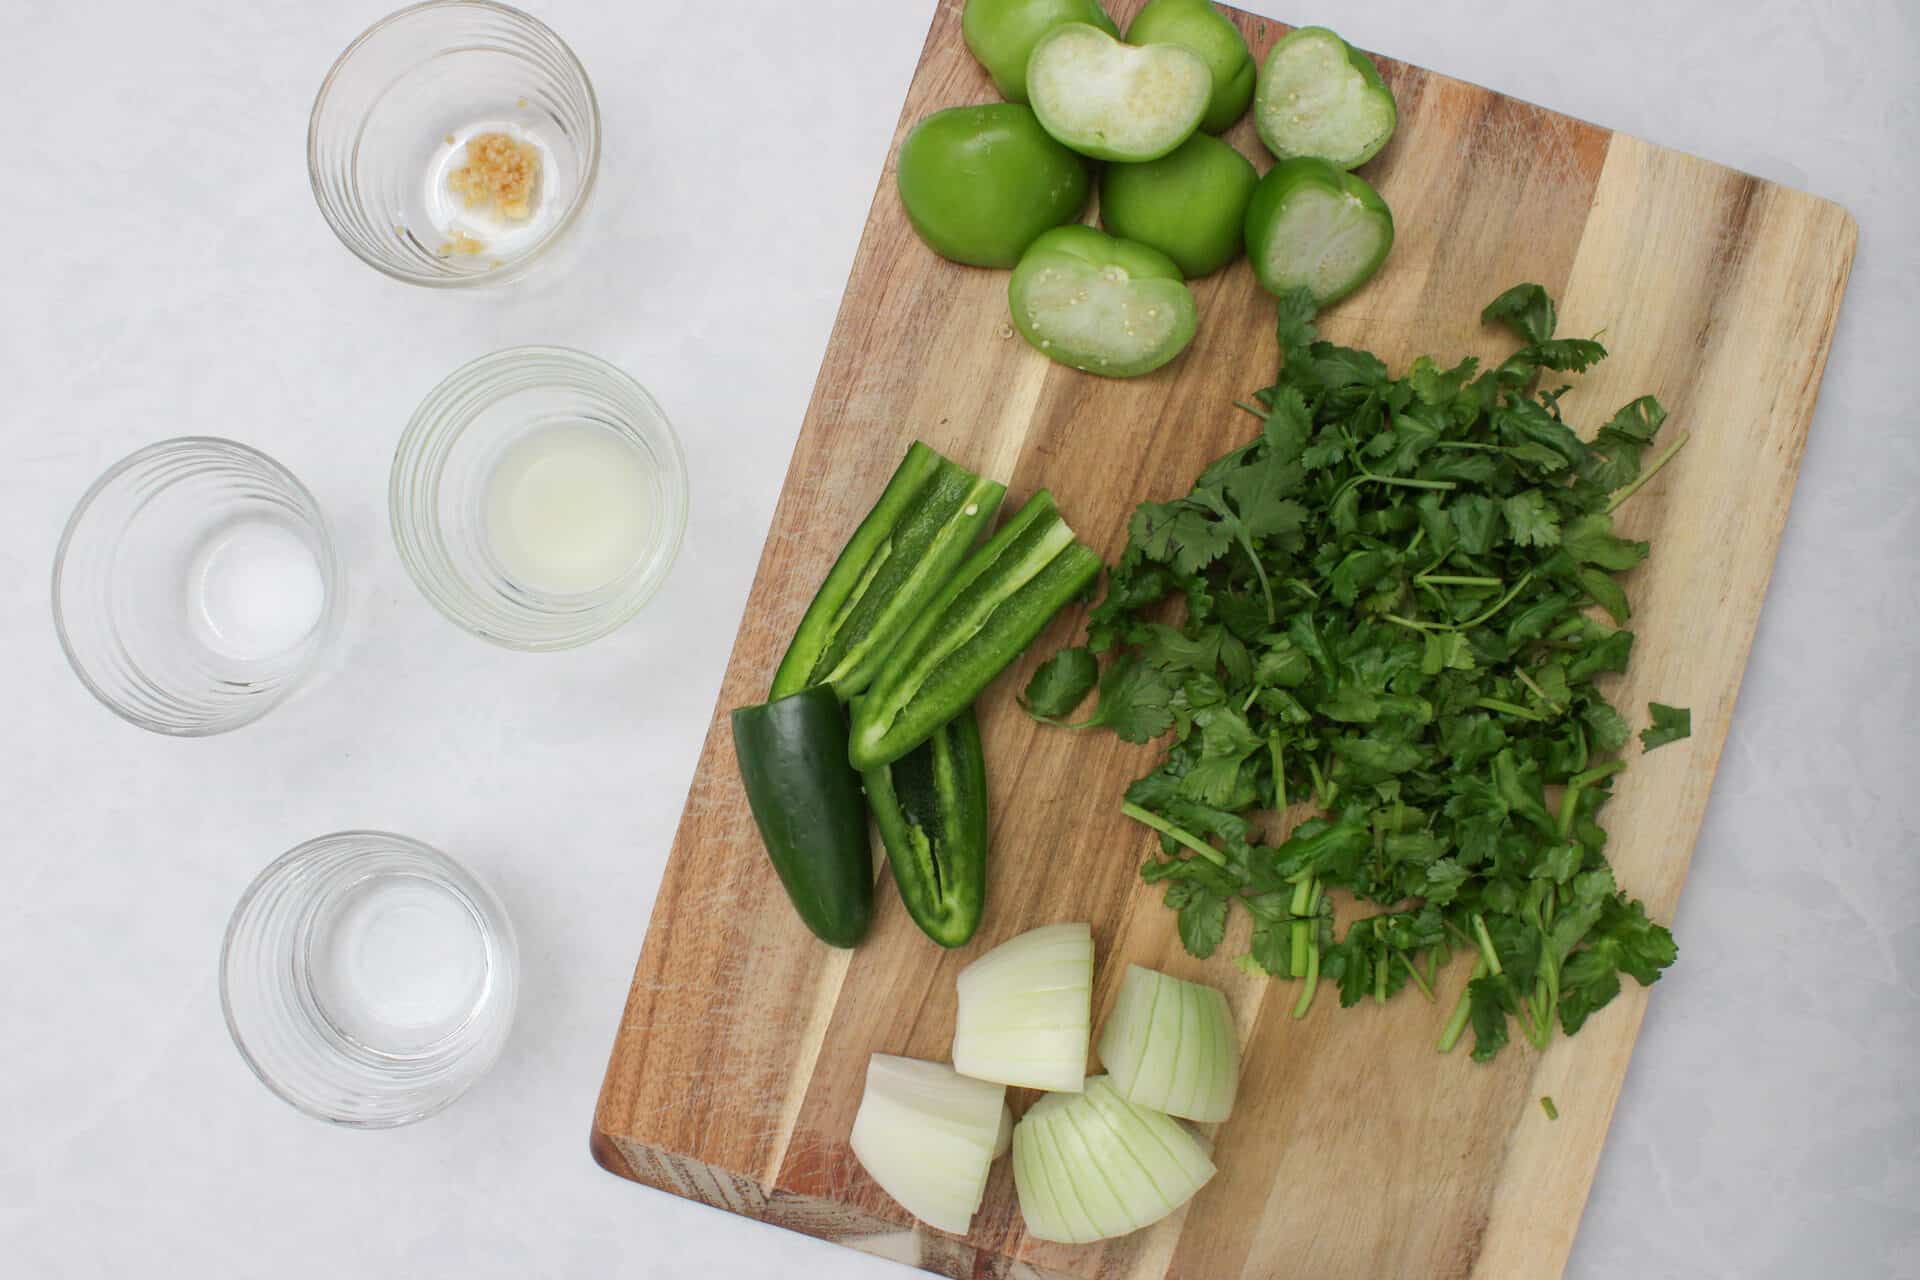 Mise en place ingredients for a salsa verde.